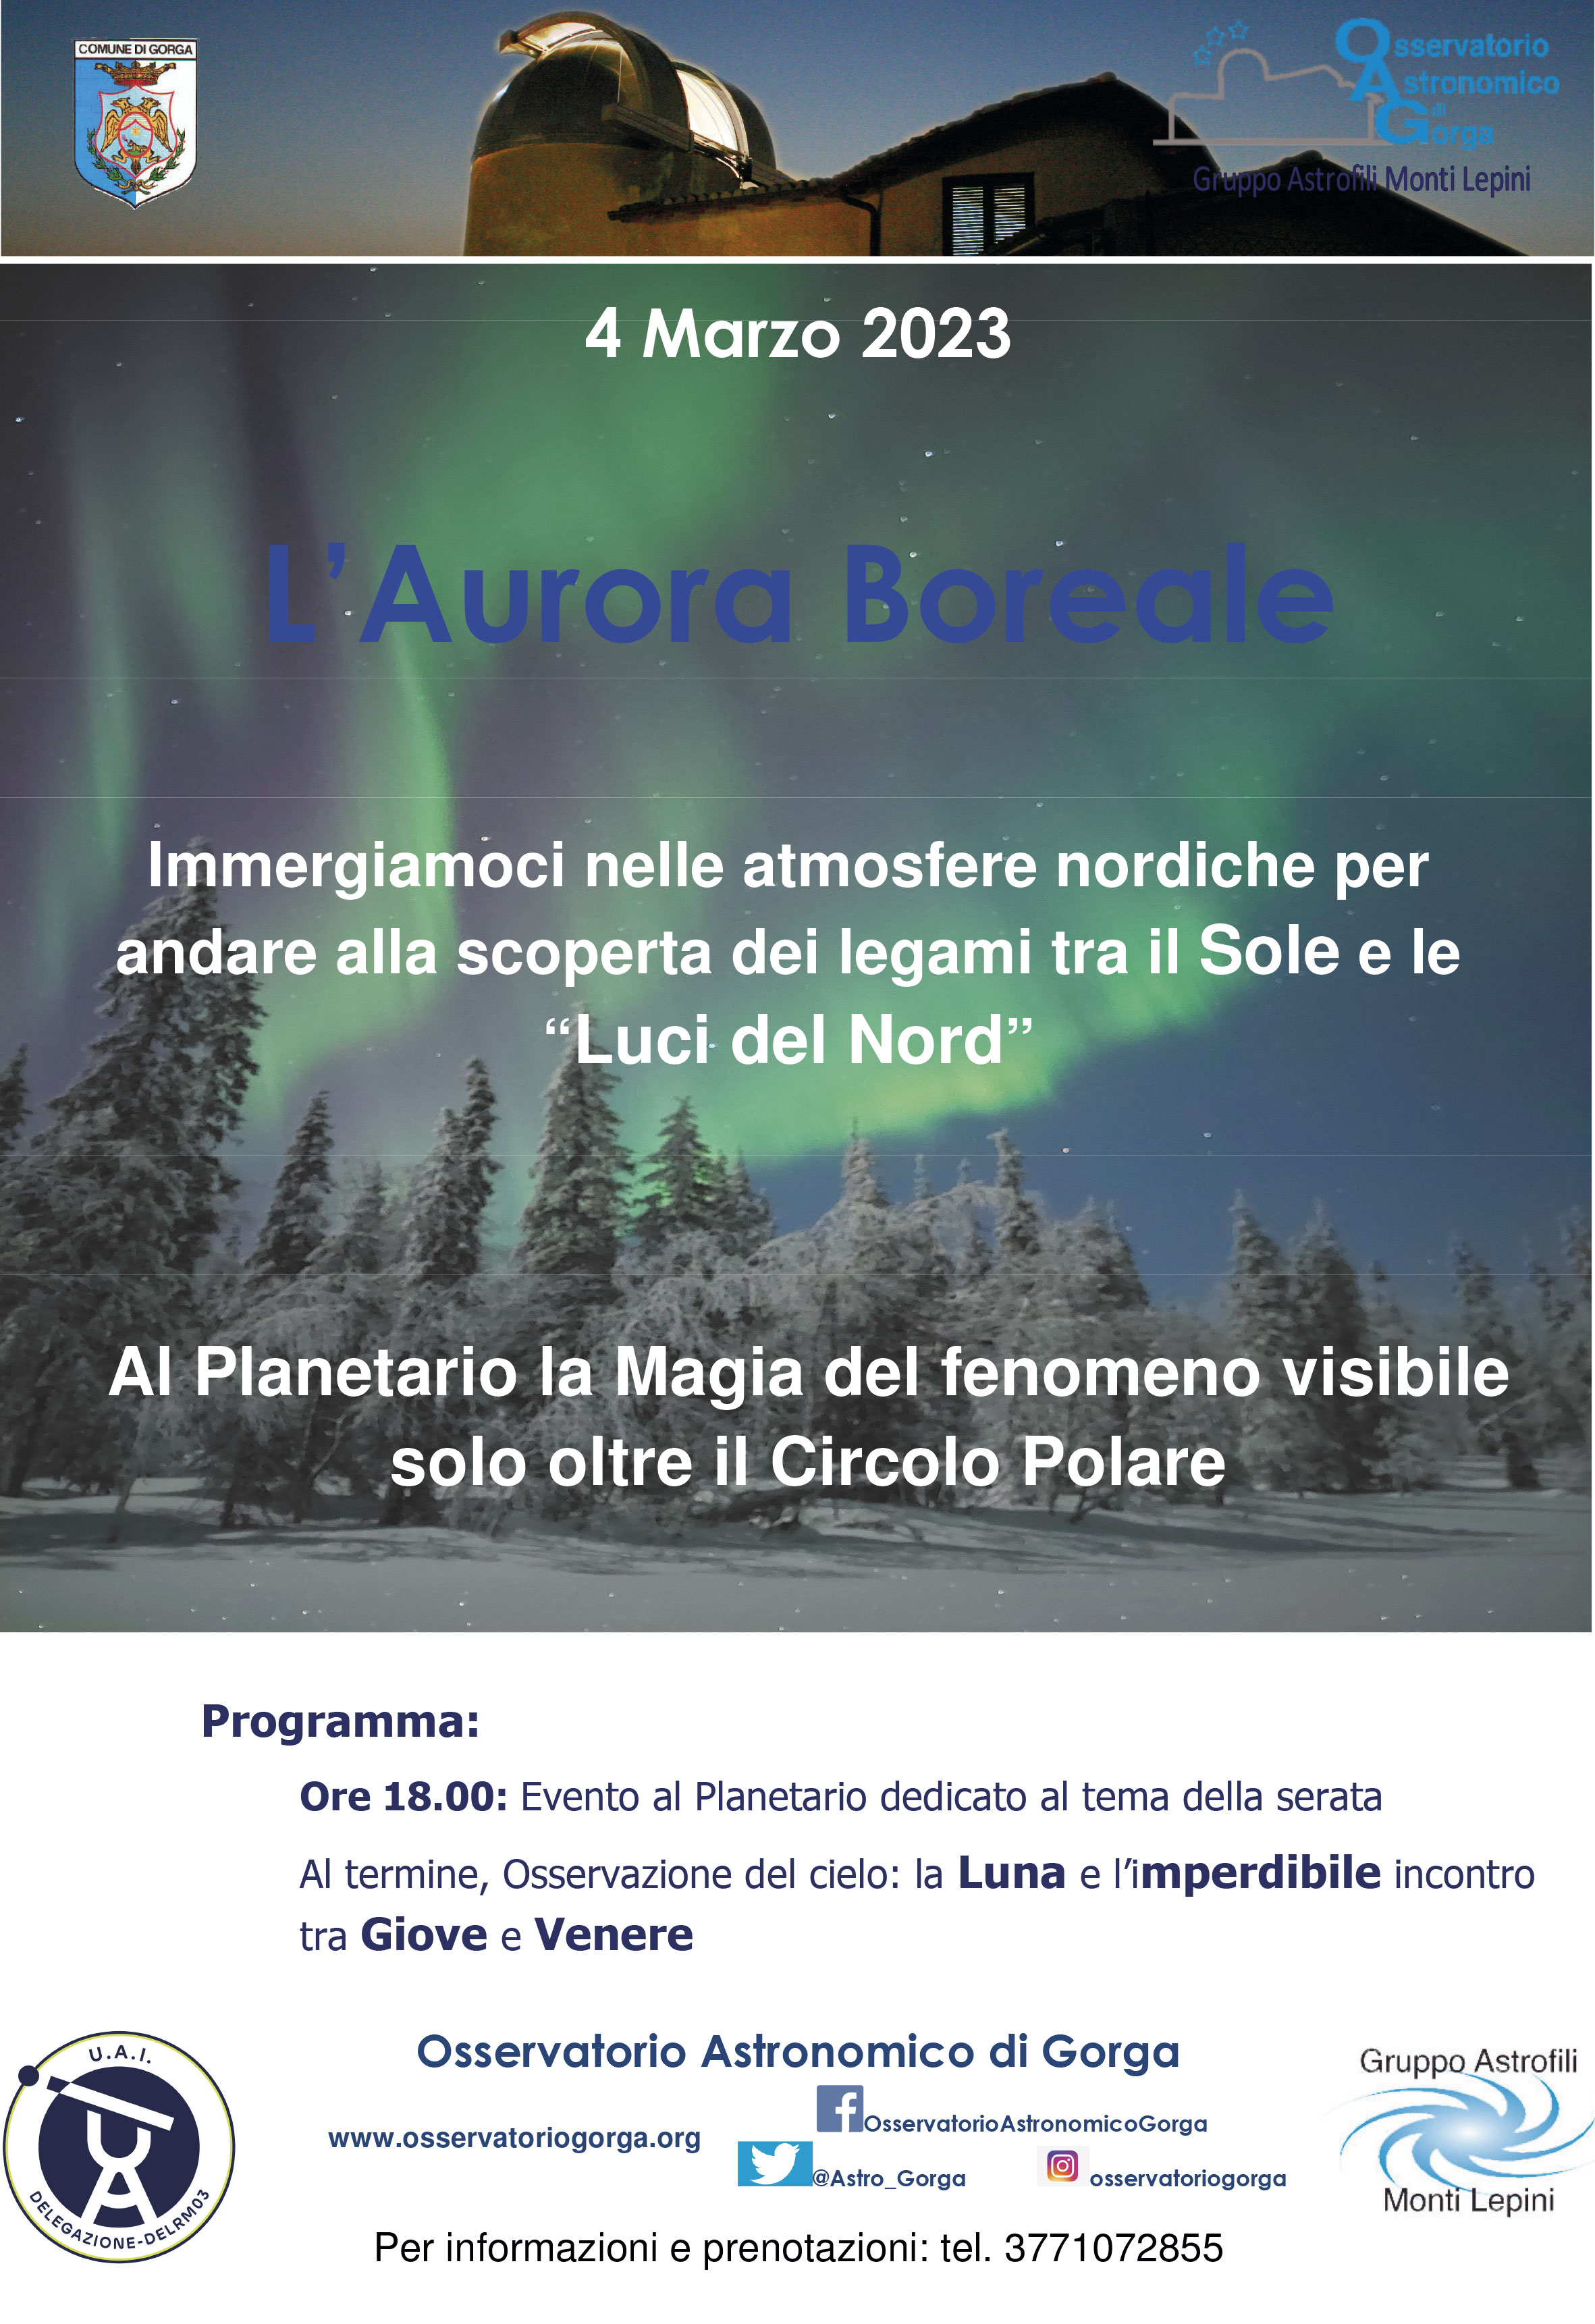 Gorga: L'aurora boreale @ Osservatorio Astronomico di Gorga